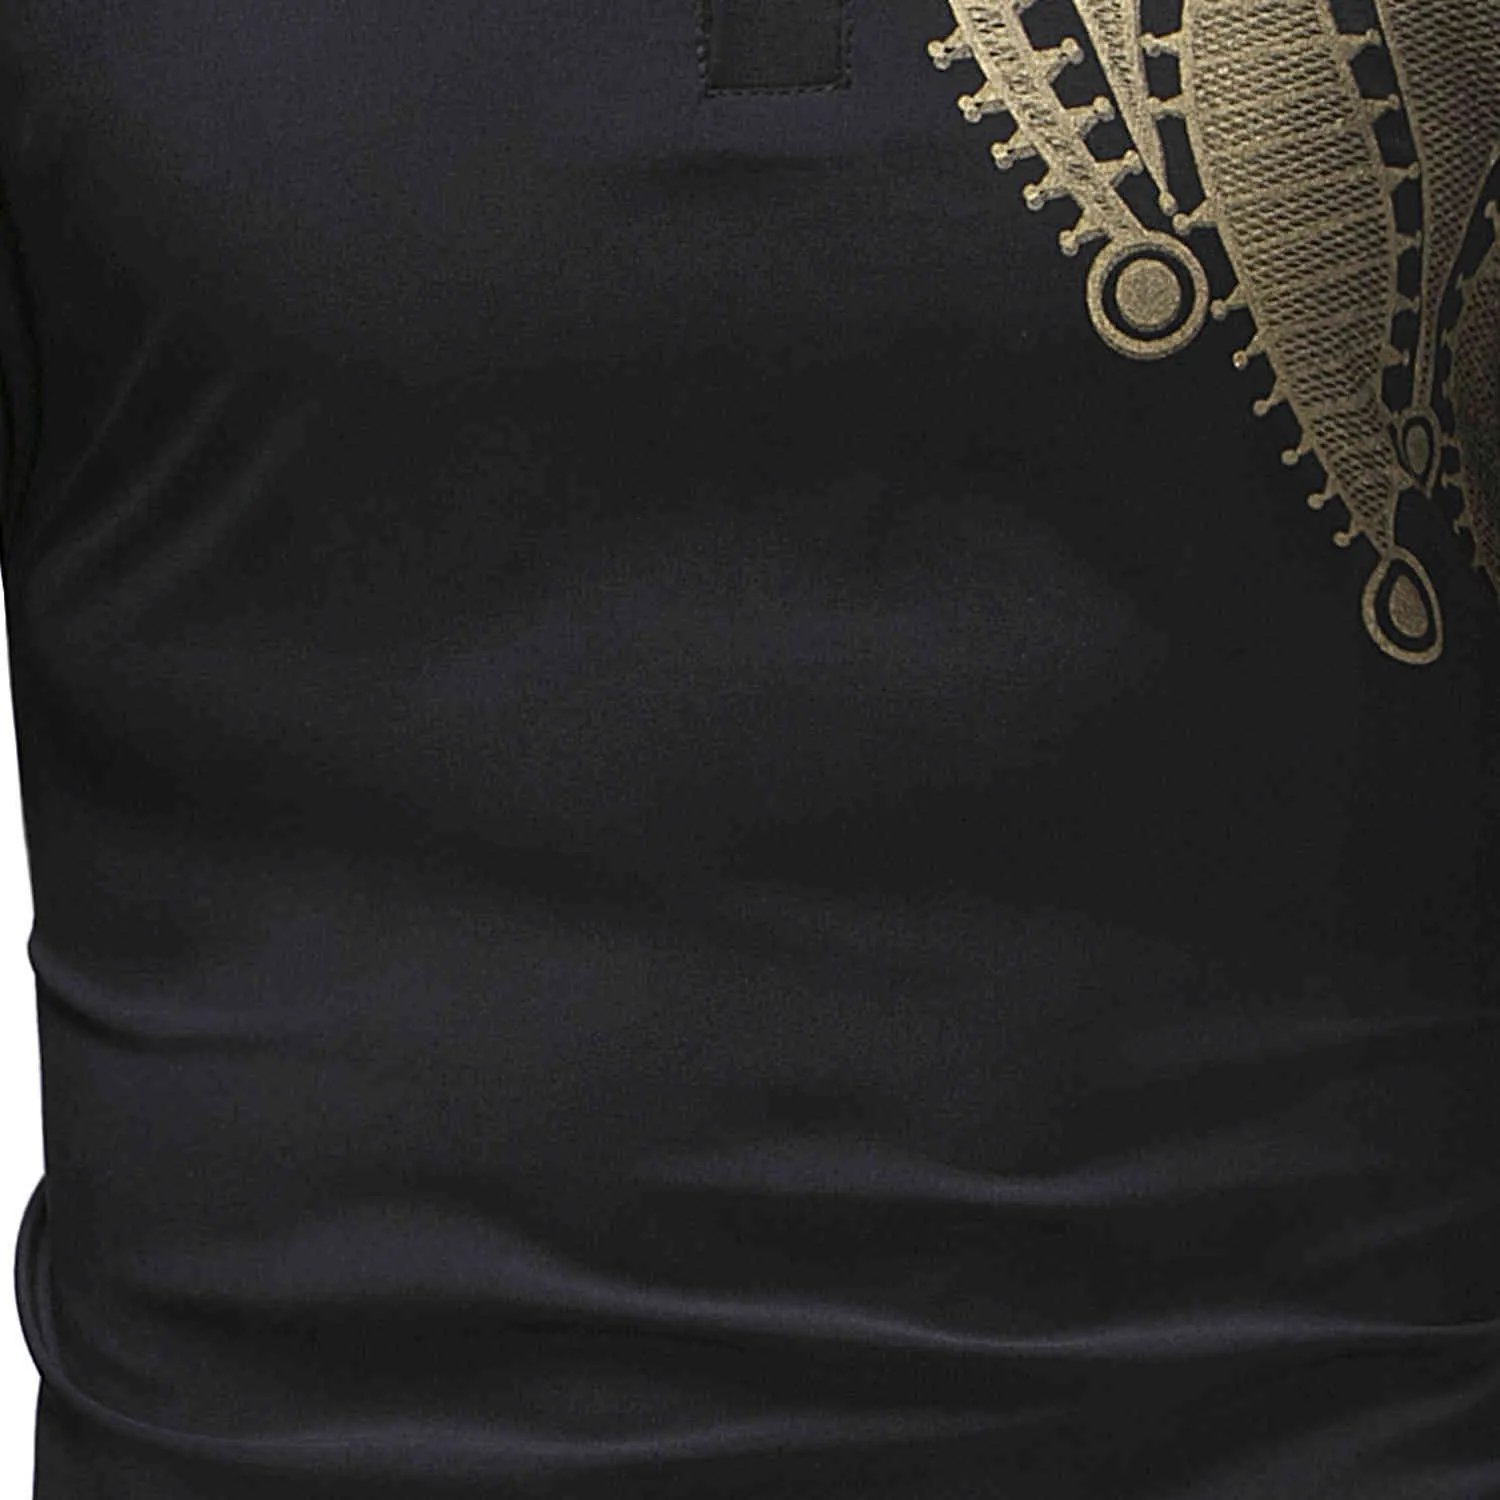 Paisley Schwarz Hemd Männer Afrikanischen Stil Dünne Lange Robe Herren Kleidung Ethnische Dashiki Camisas Bazin Tops Drucken T Shirts 210524